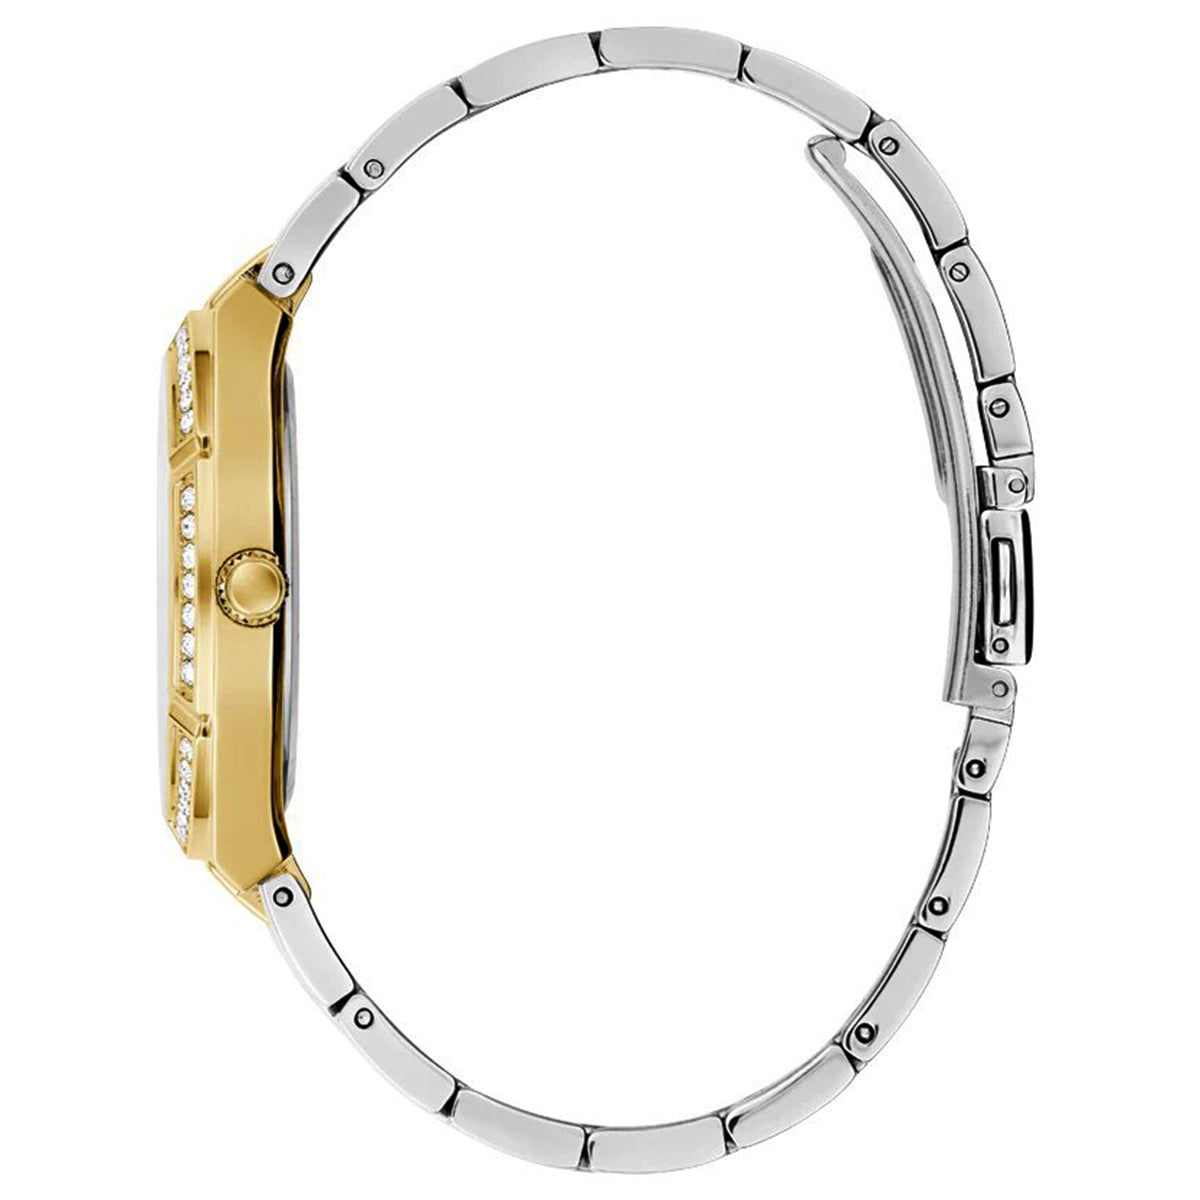 Women watch two-tone stainless steel bracelet